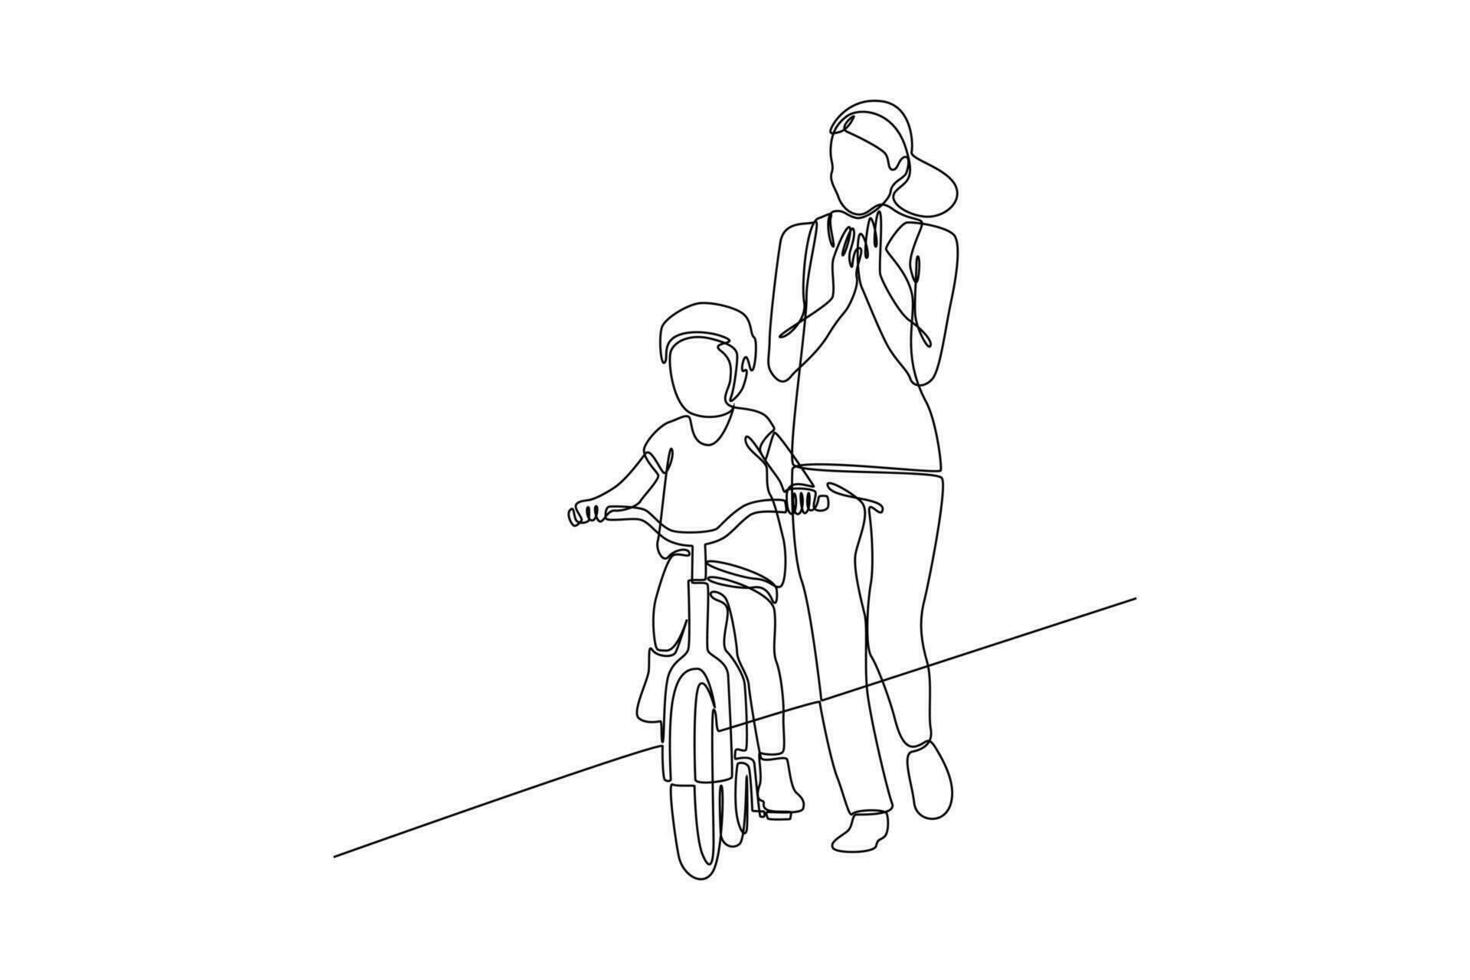 kontinuierlich einer Linie Zeichnung glücklich Eltern mit ihr Kind Reiten Fahrrad zusammen. Vektor Illustration.